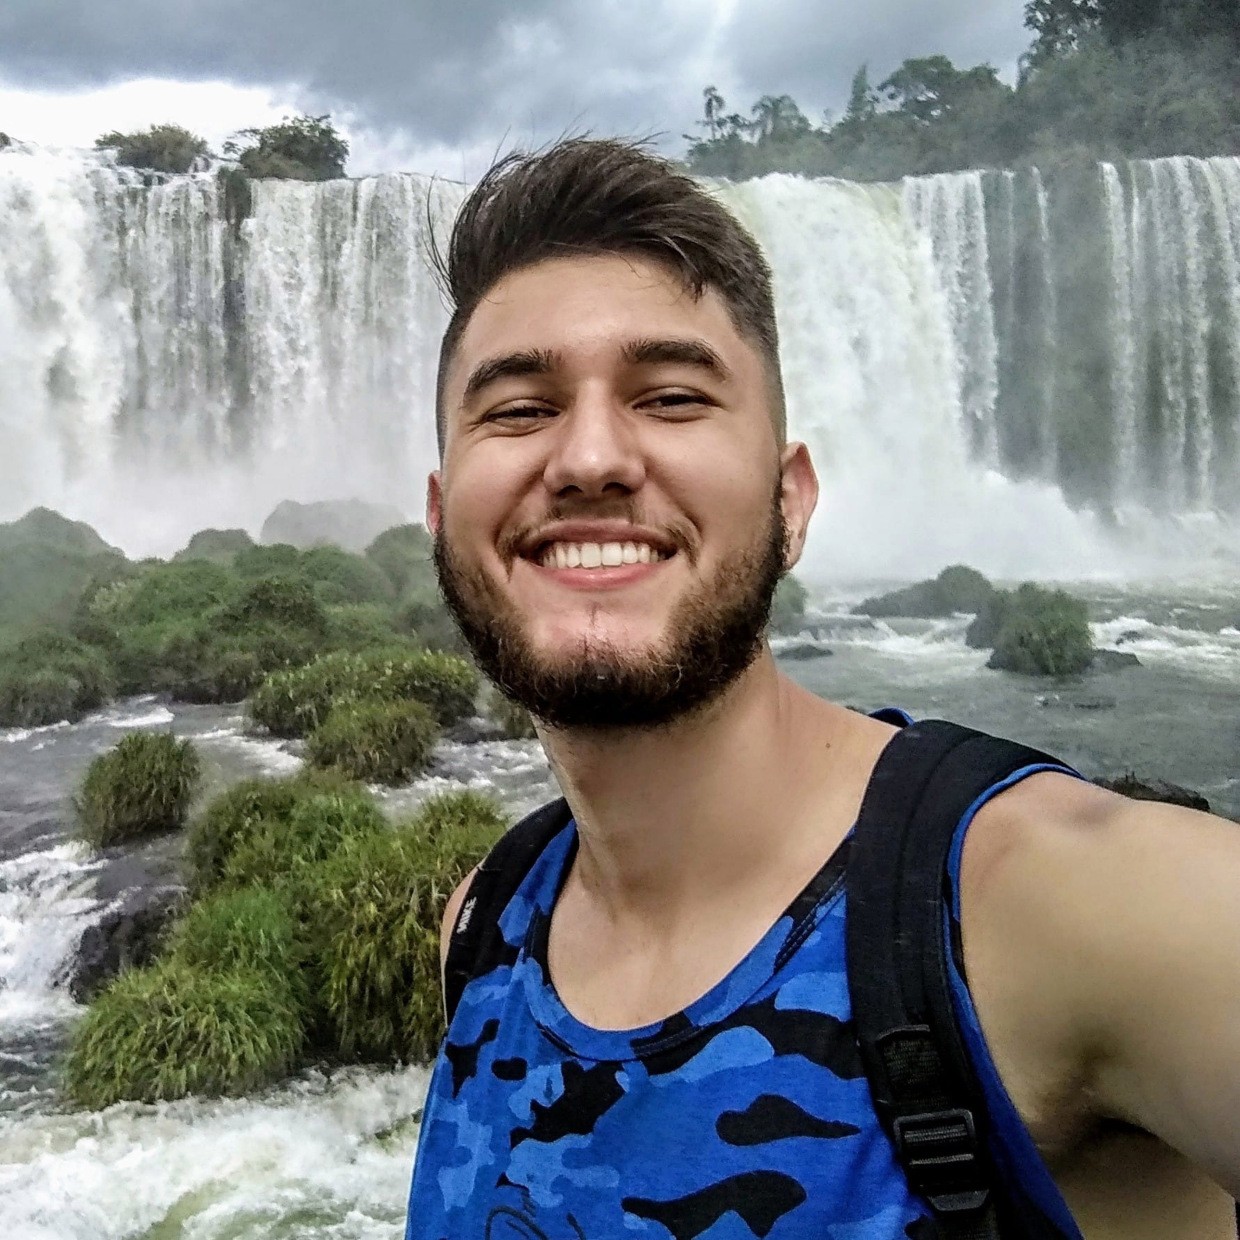 Jovem de 22 anos que morreu após selfie na cachoeira figura em noticiário internacional (Foto: Facebook)